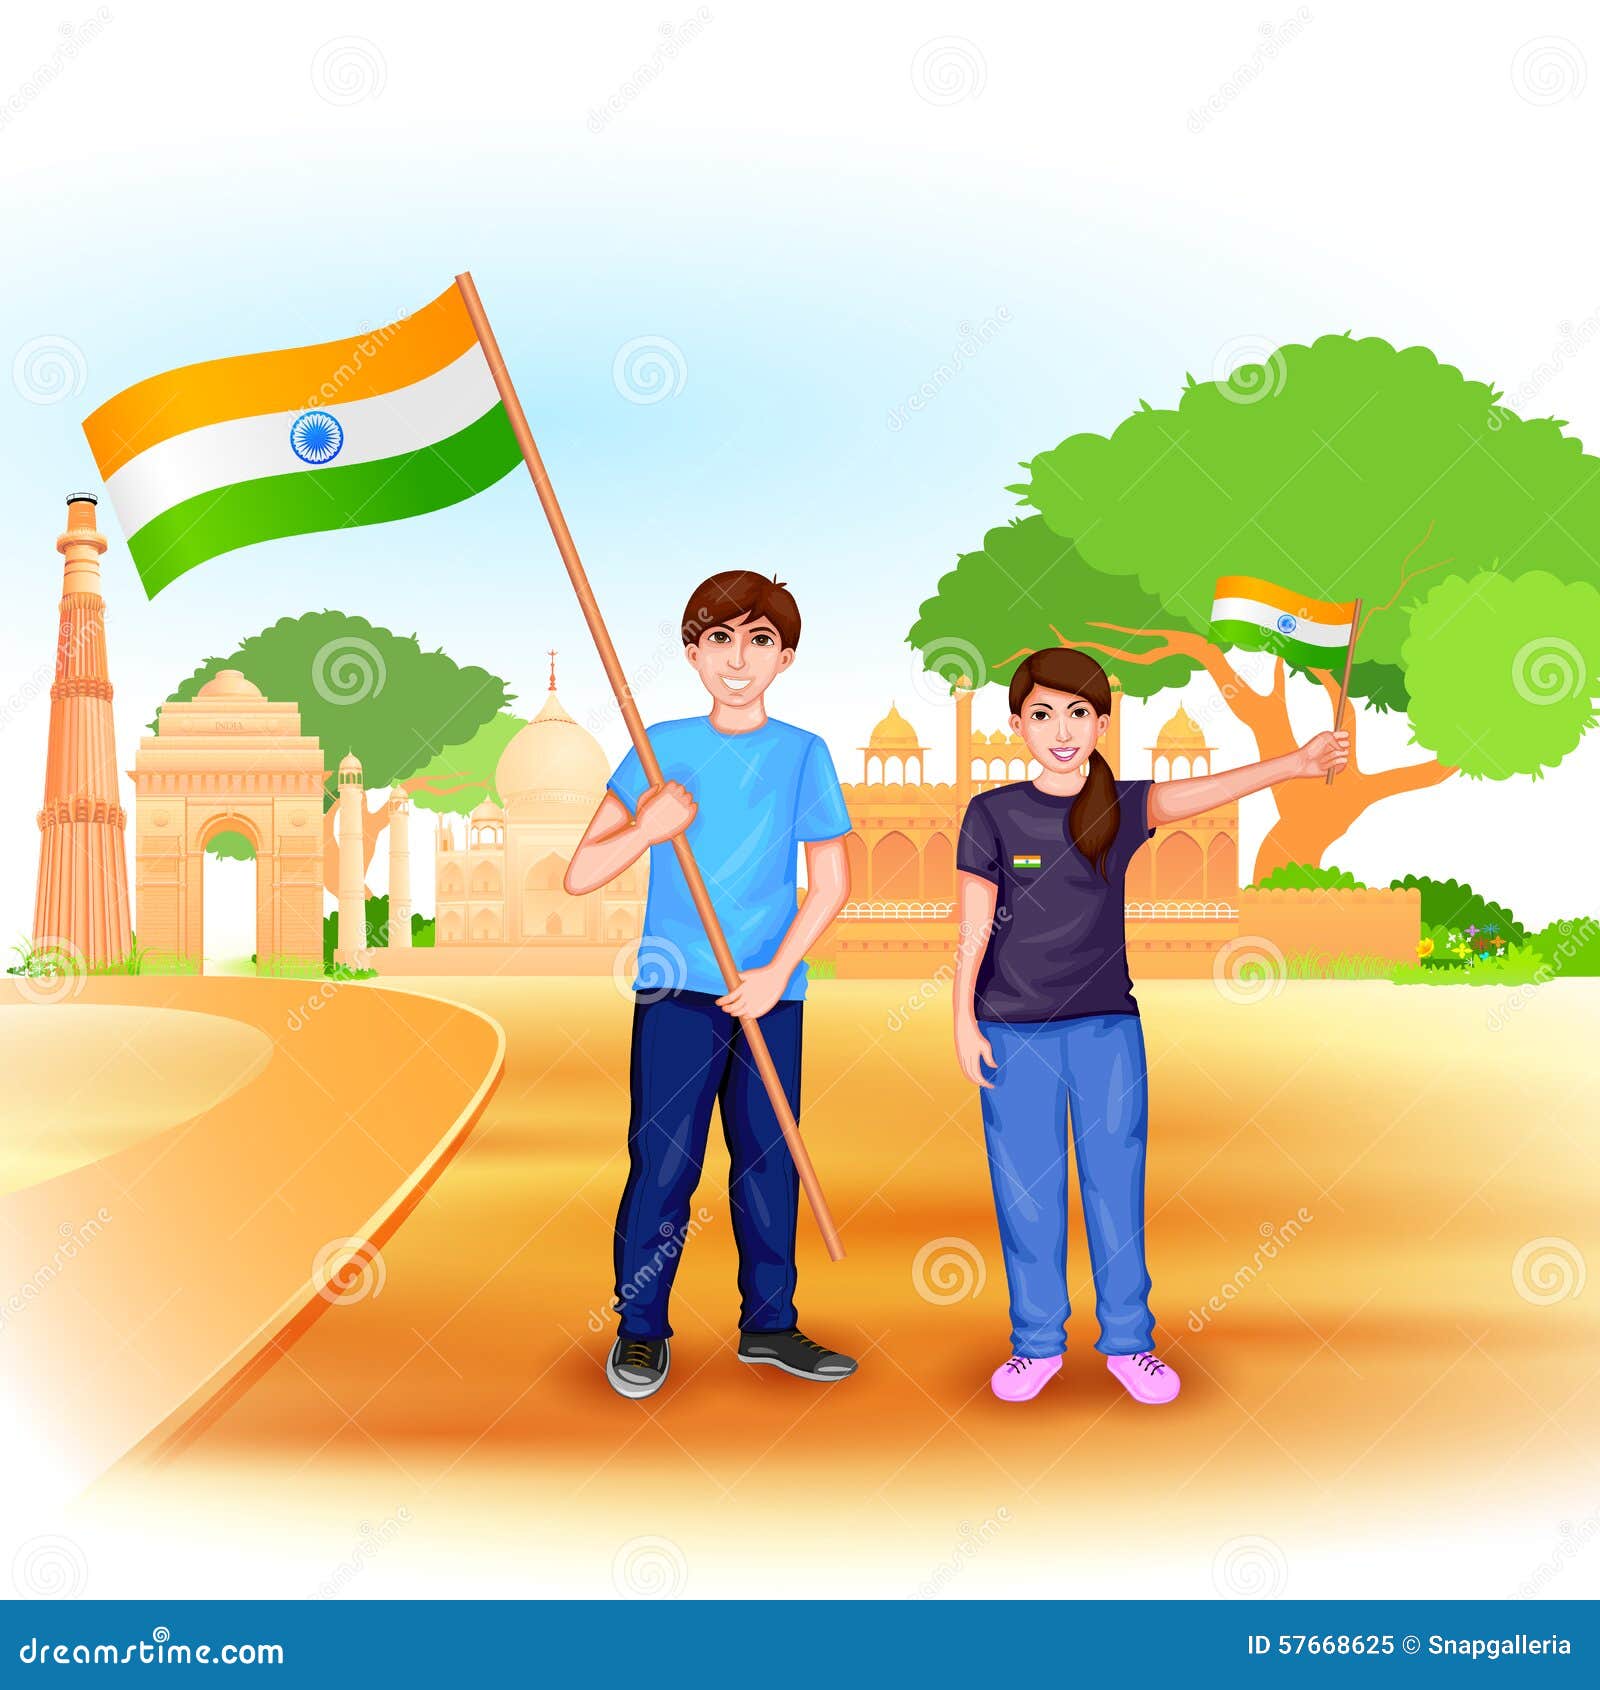 Łatwy redagować wektorową ilustrację ludzie z indianin flaga odświętności wolnością India